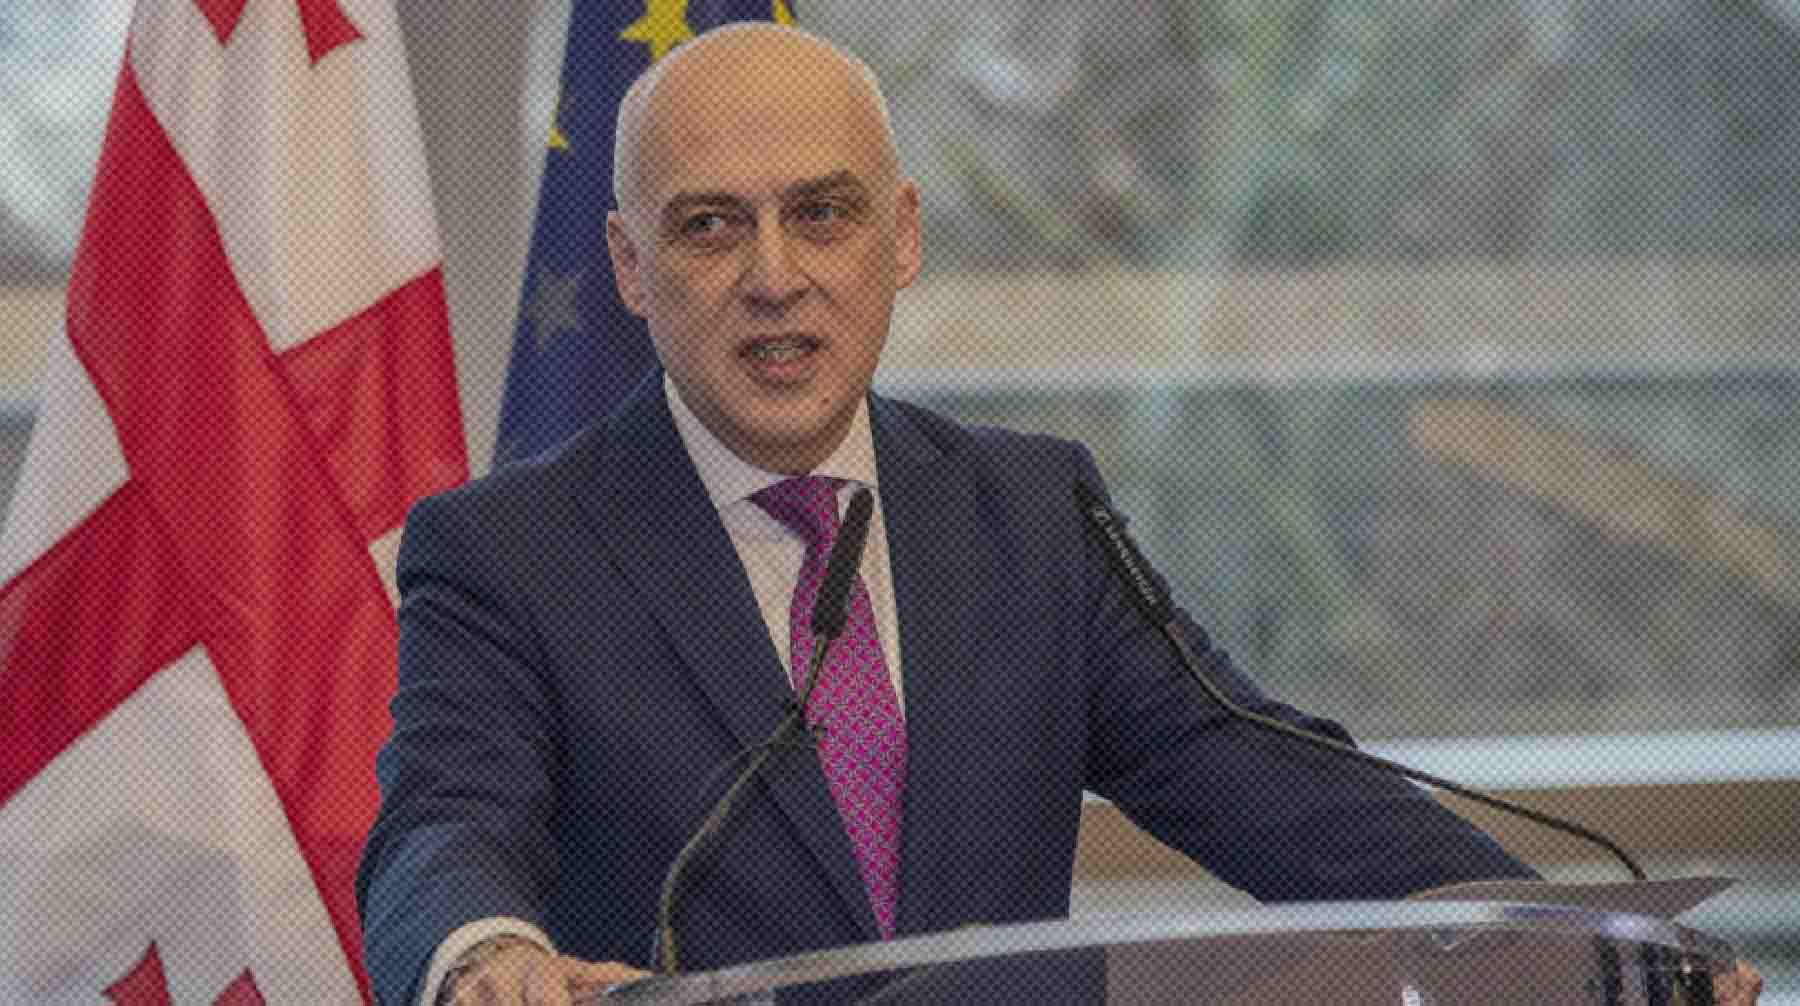 Dailystorm - Глава МИД Грузии заявил о недопустимости проведения референдума в Южной Осетии